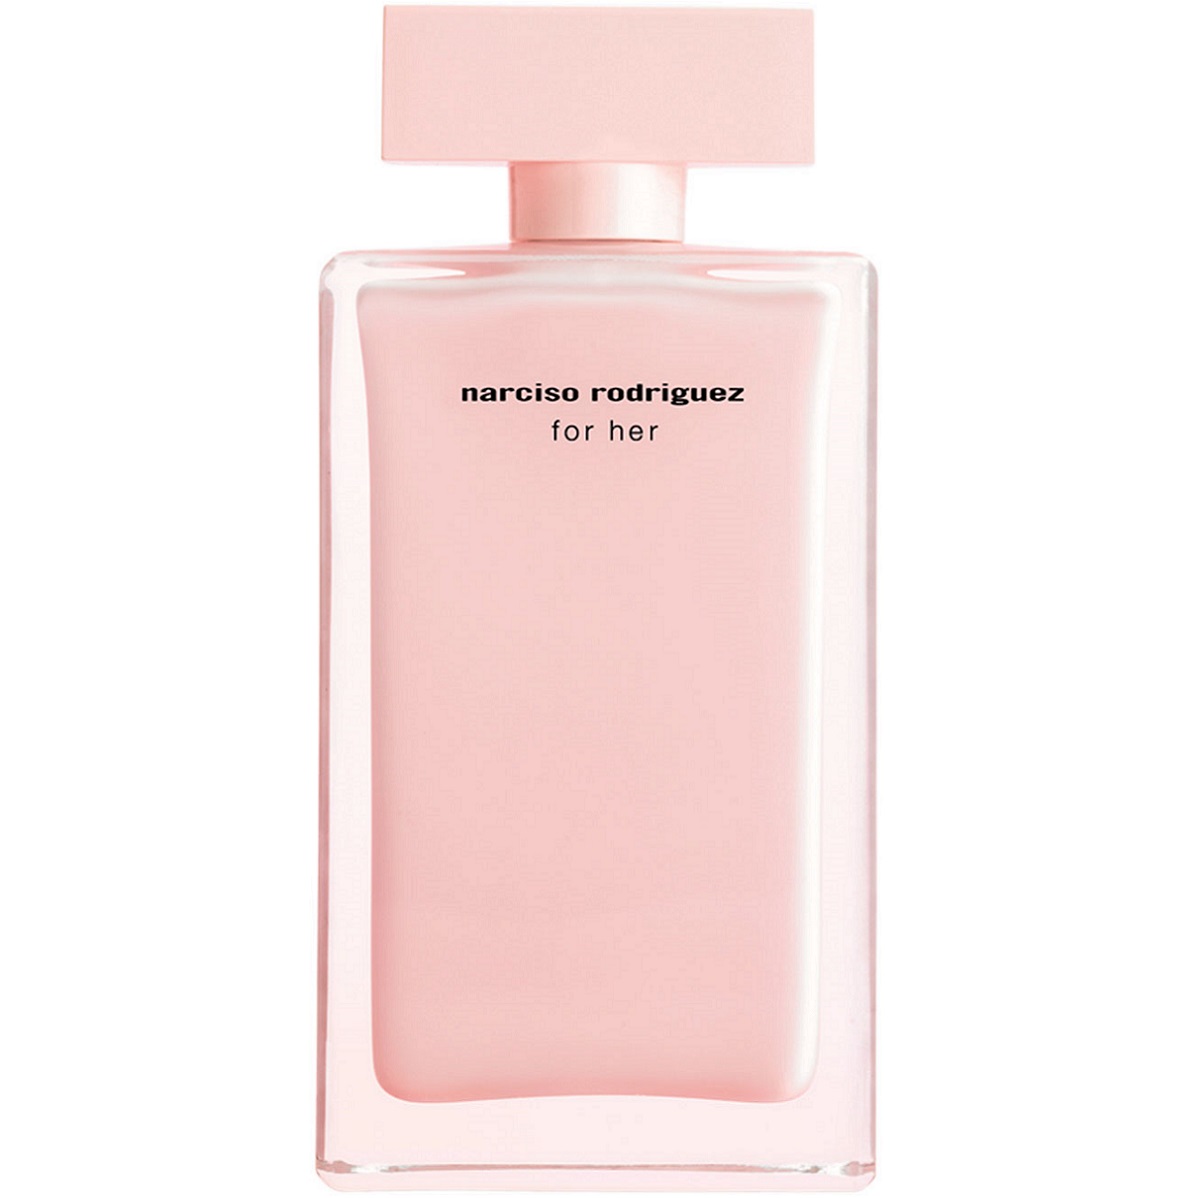 Narciso Rodriguez - For Her Eau de Parfum (3мл)